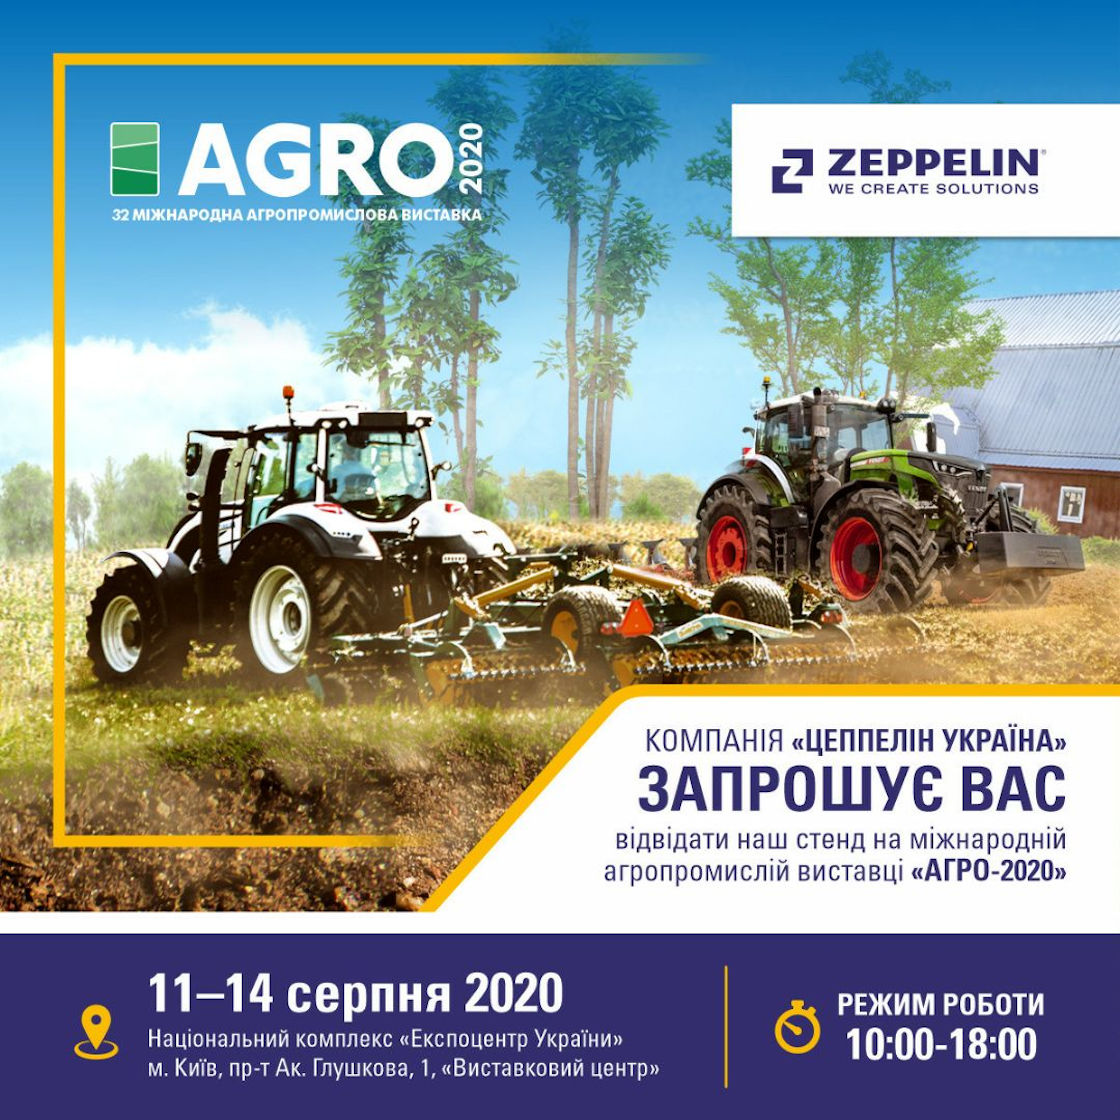 32 міжнародна агропромислова виставка "АГРО-2020"